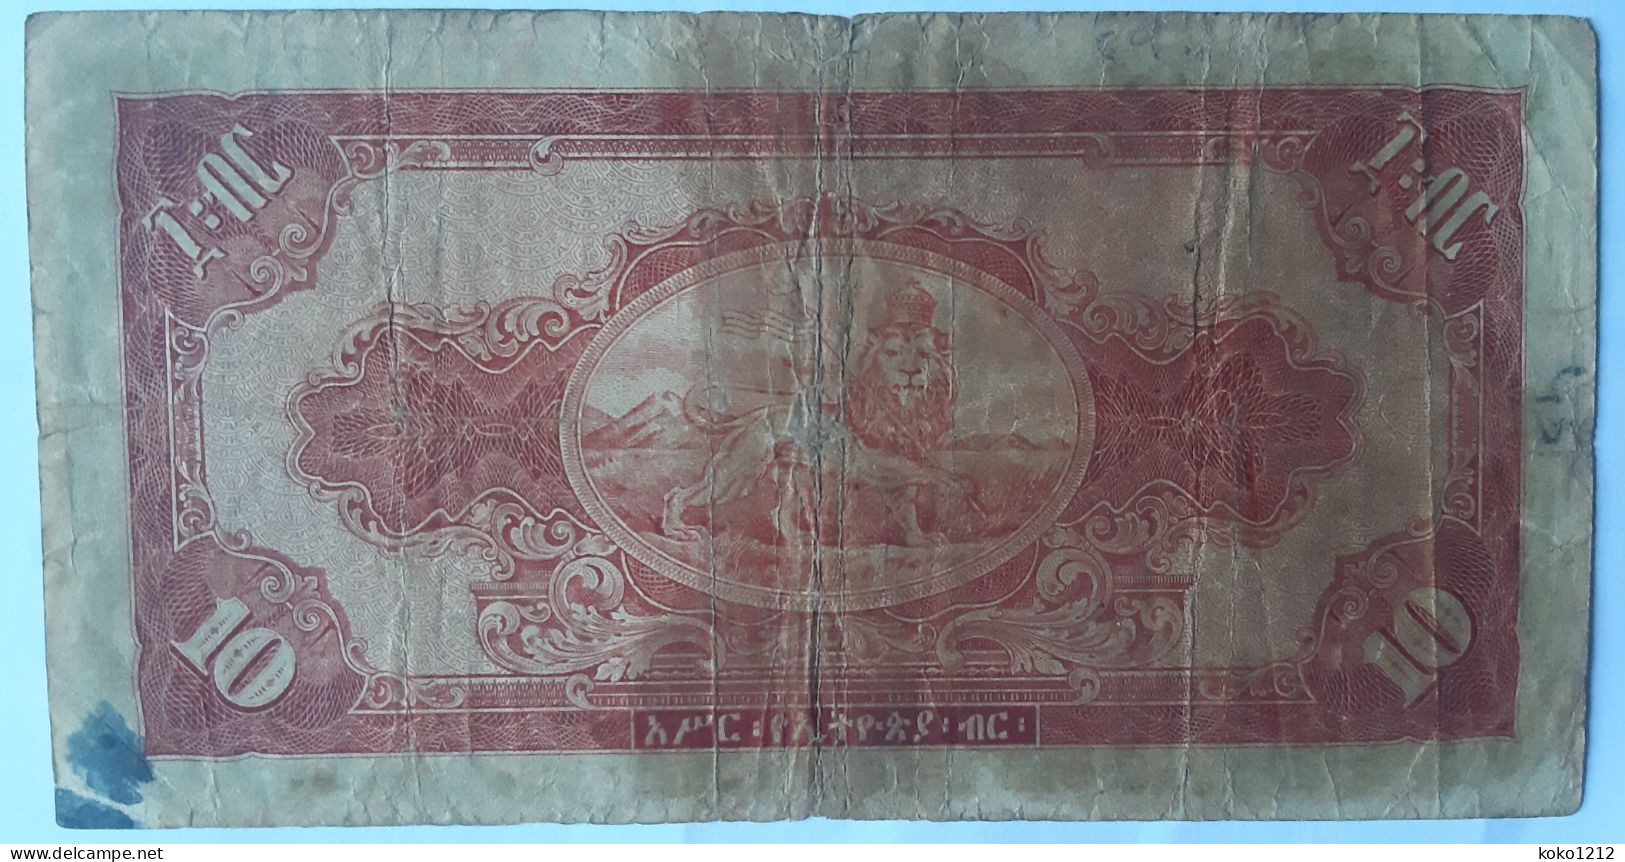 Ethiopia 10 Dollars 1945 P14 VG - Aethiopien